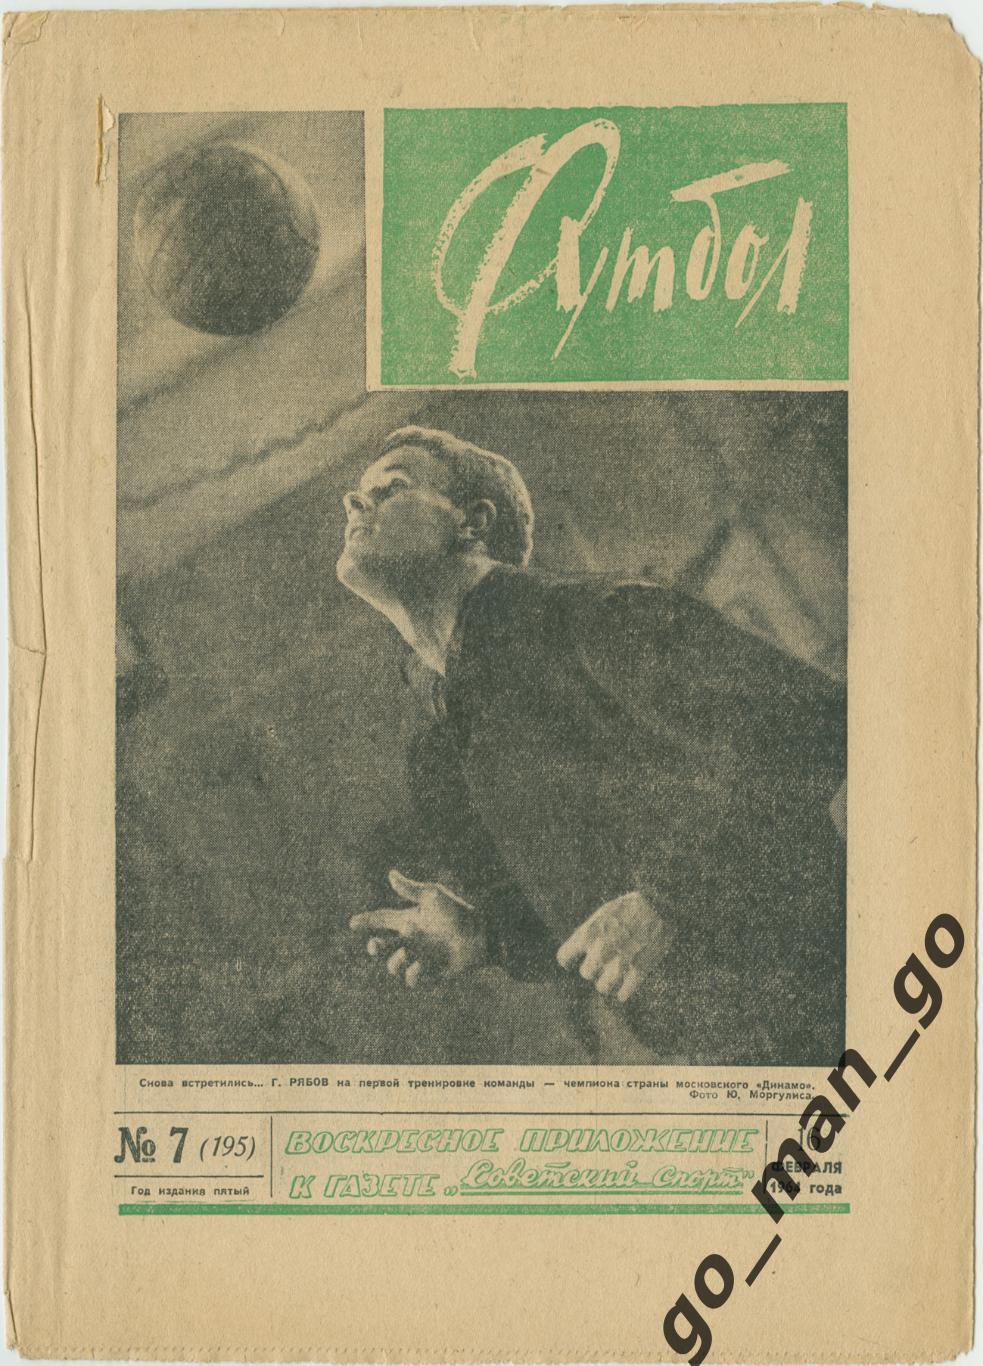 Еженедельник Футбол 1964, № 7.